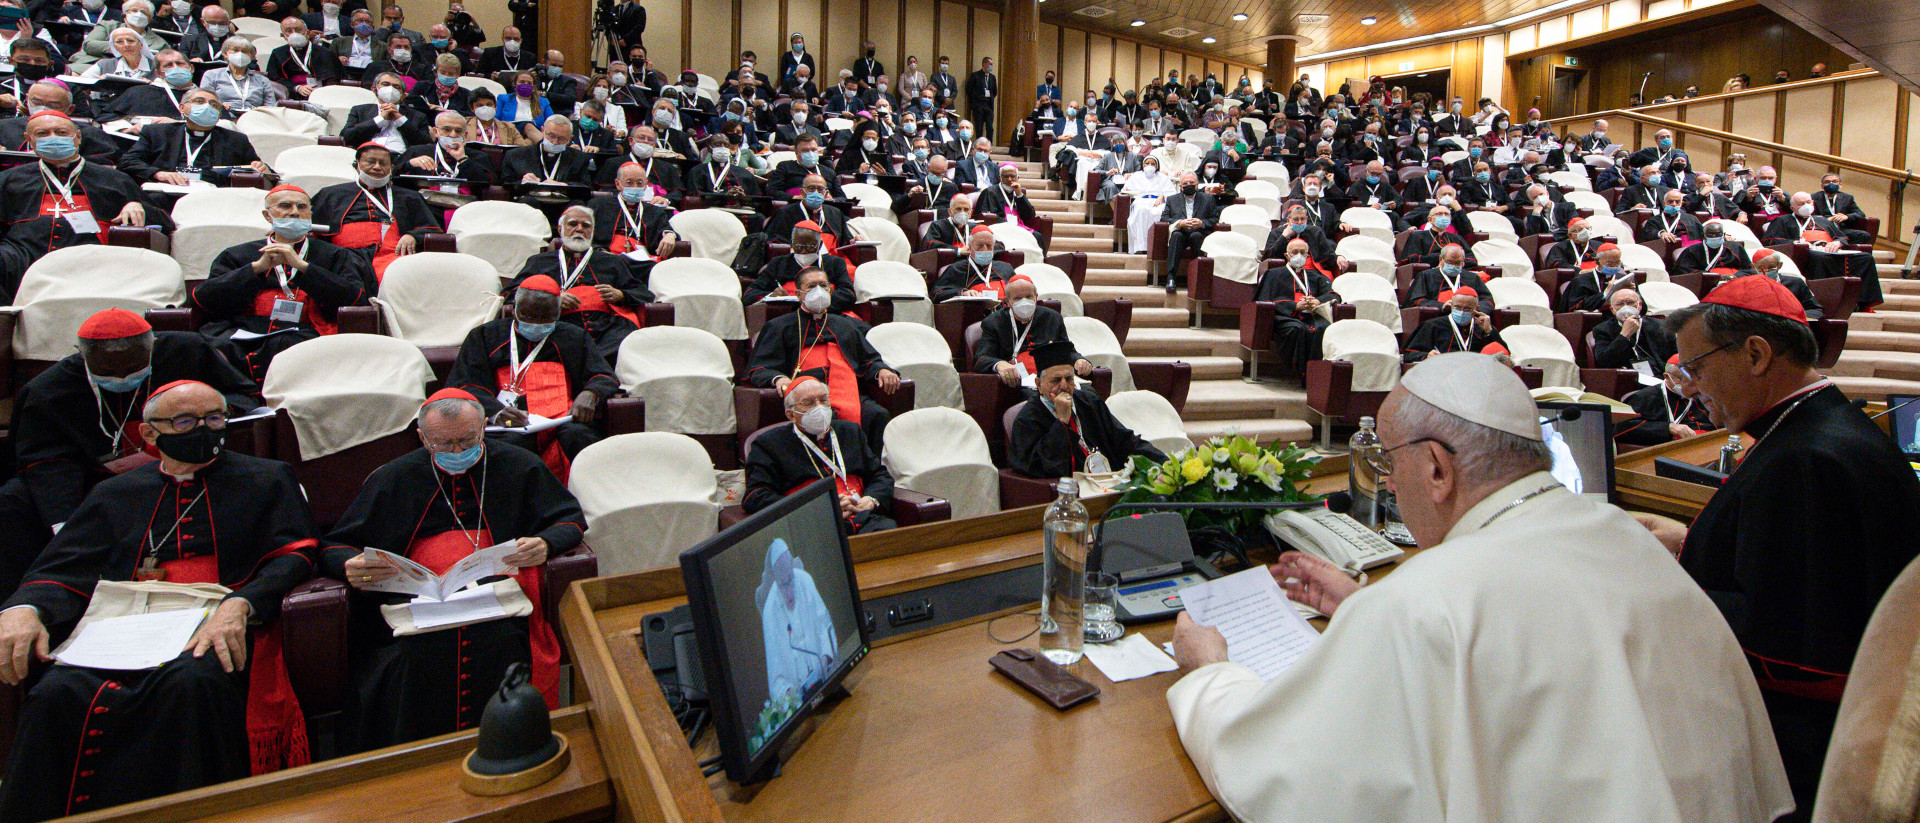 Papst Franziskus eröffnet die Weltsynode am 9. Oktober 2021 im Vatikan.